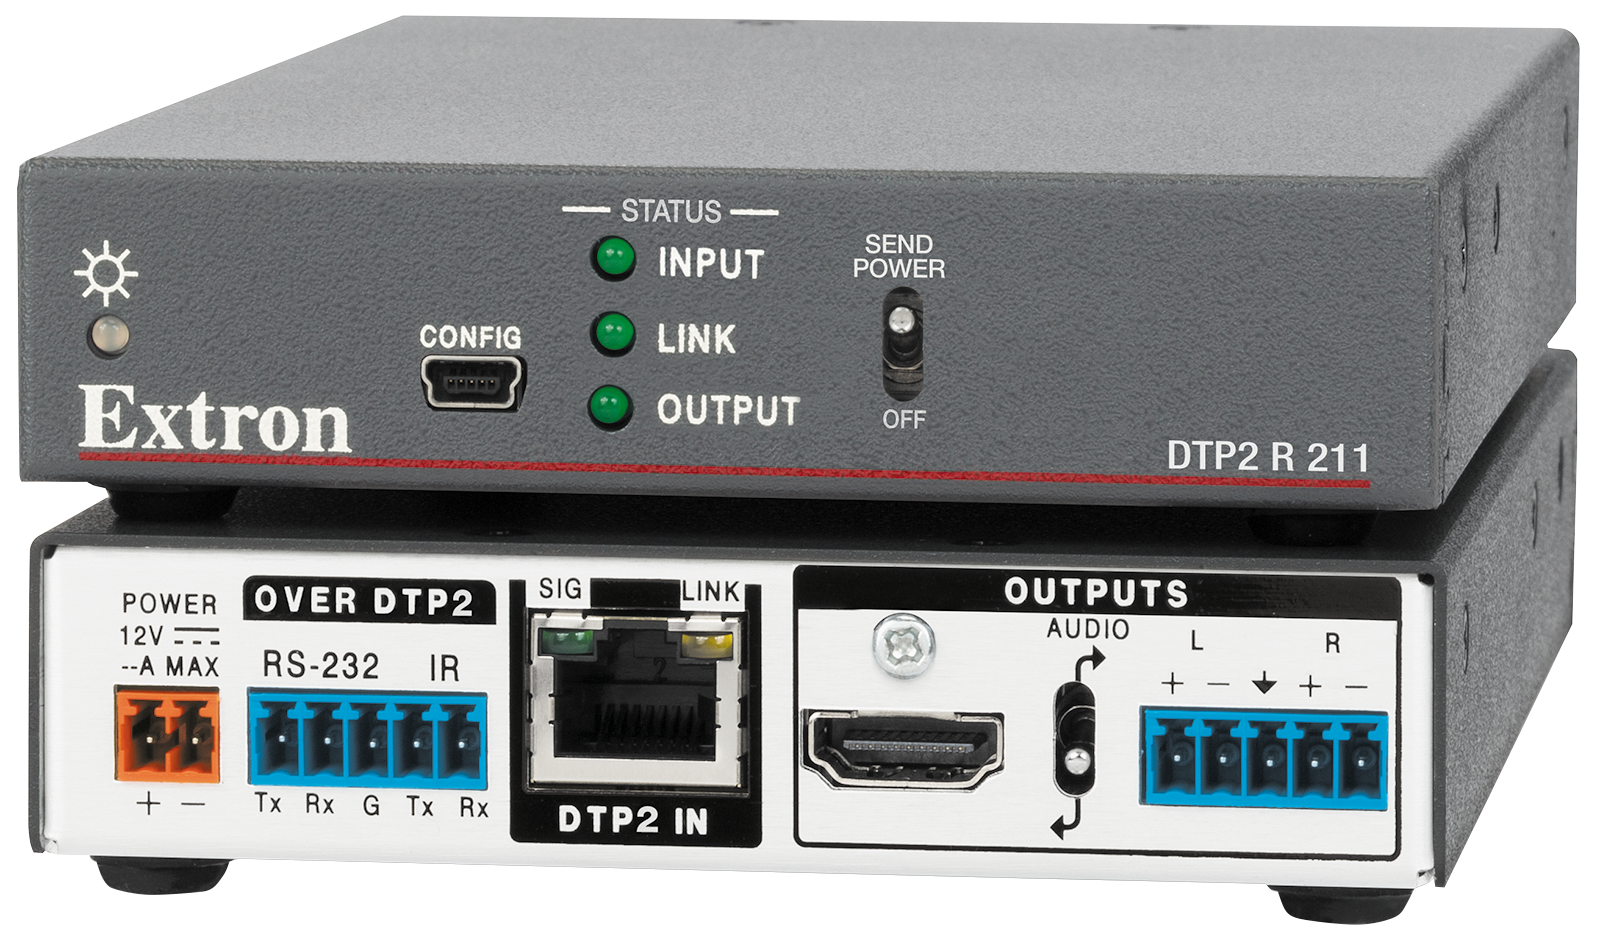 Extron dtp2 r 211. Extron HDMI приемник. Extron dtp2 t 212. 60-1631-53 Приёмник dtp2 с деэмбедированием аудио для HDMI 4k/60, dtp2 r 211 7. Outputs send